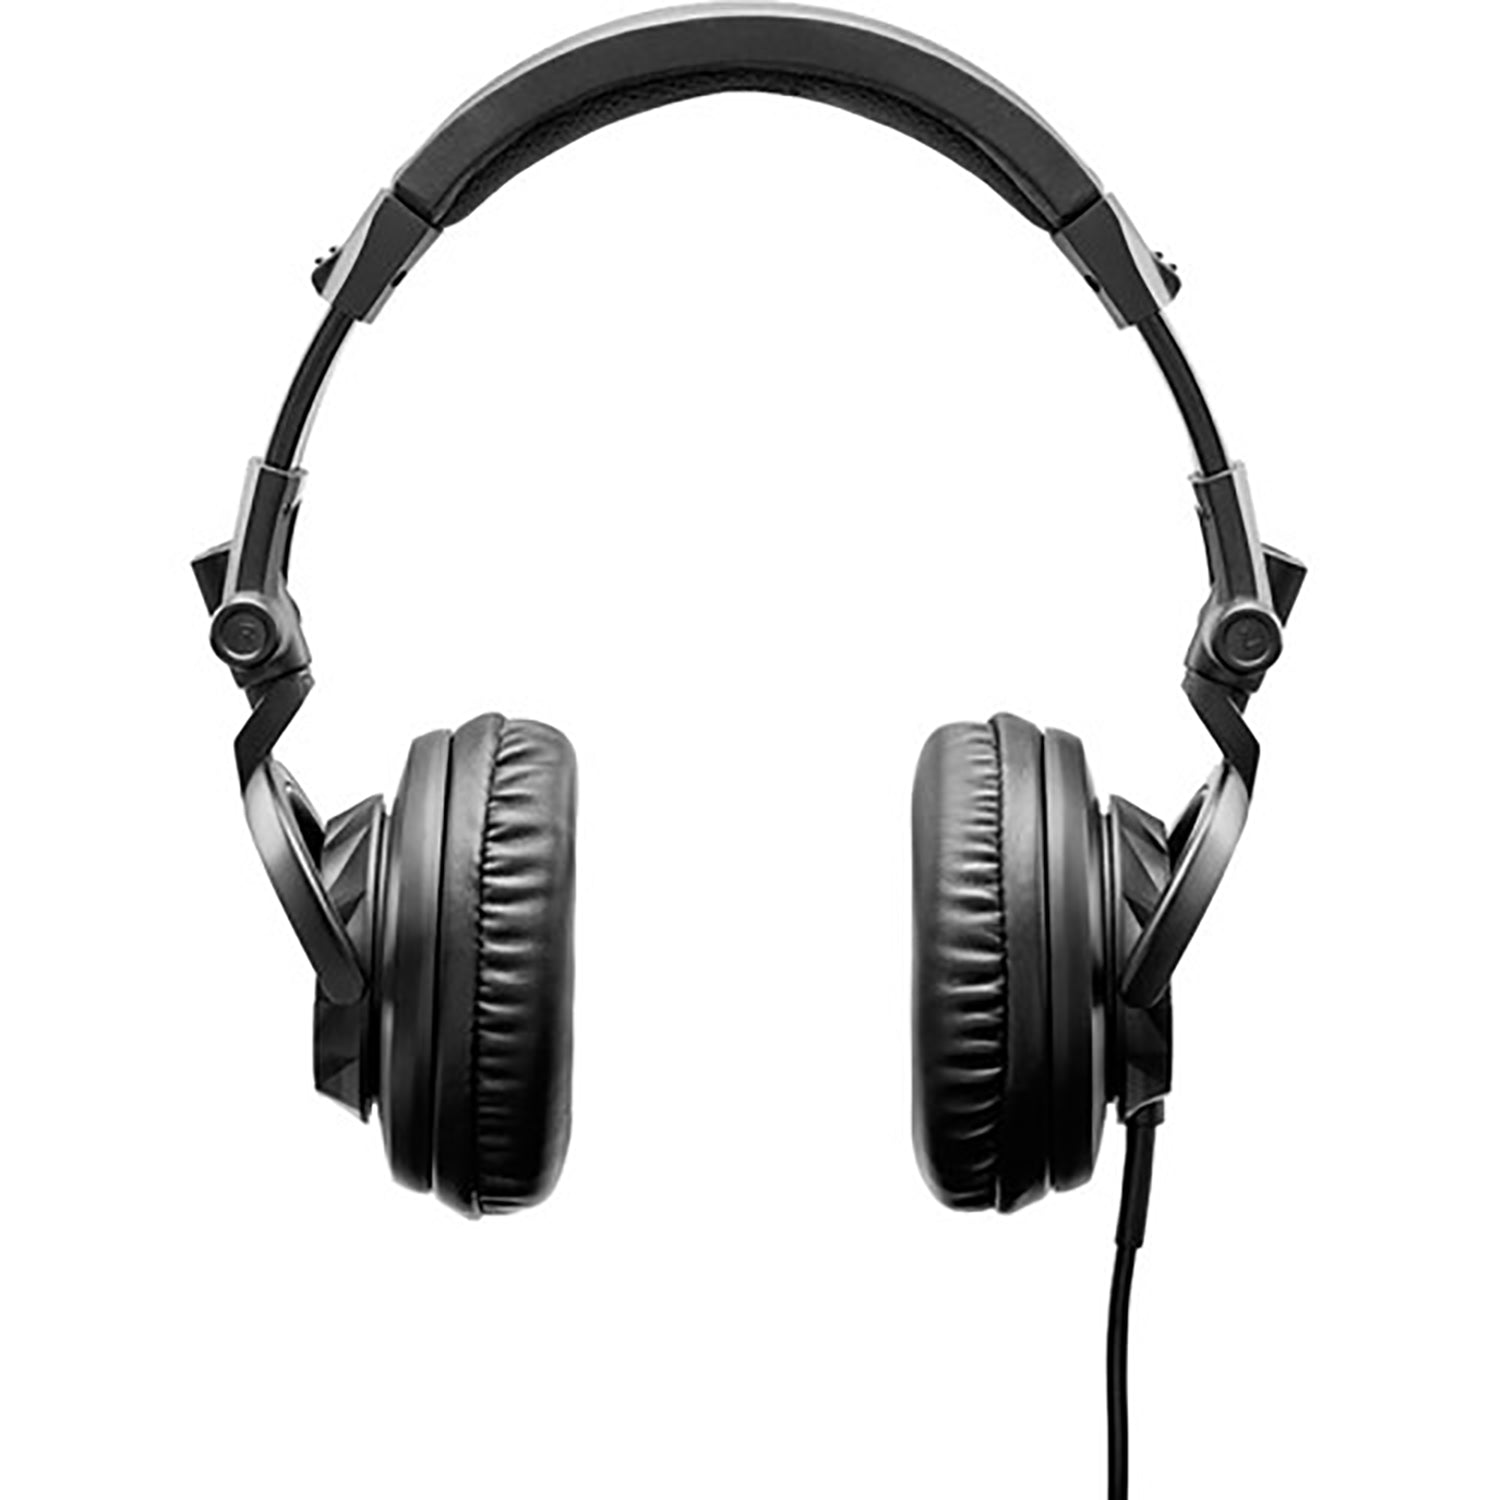 B-Stock: Hercules HDP DJ45 Closed-Back, Over-Ear DJ Headphones by Hercules DJ